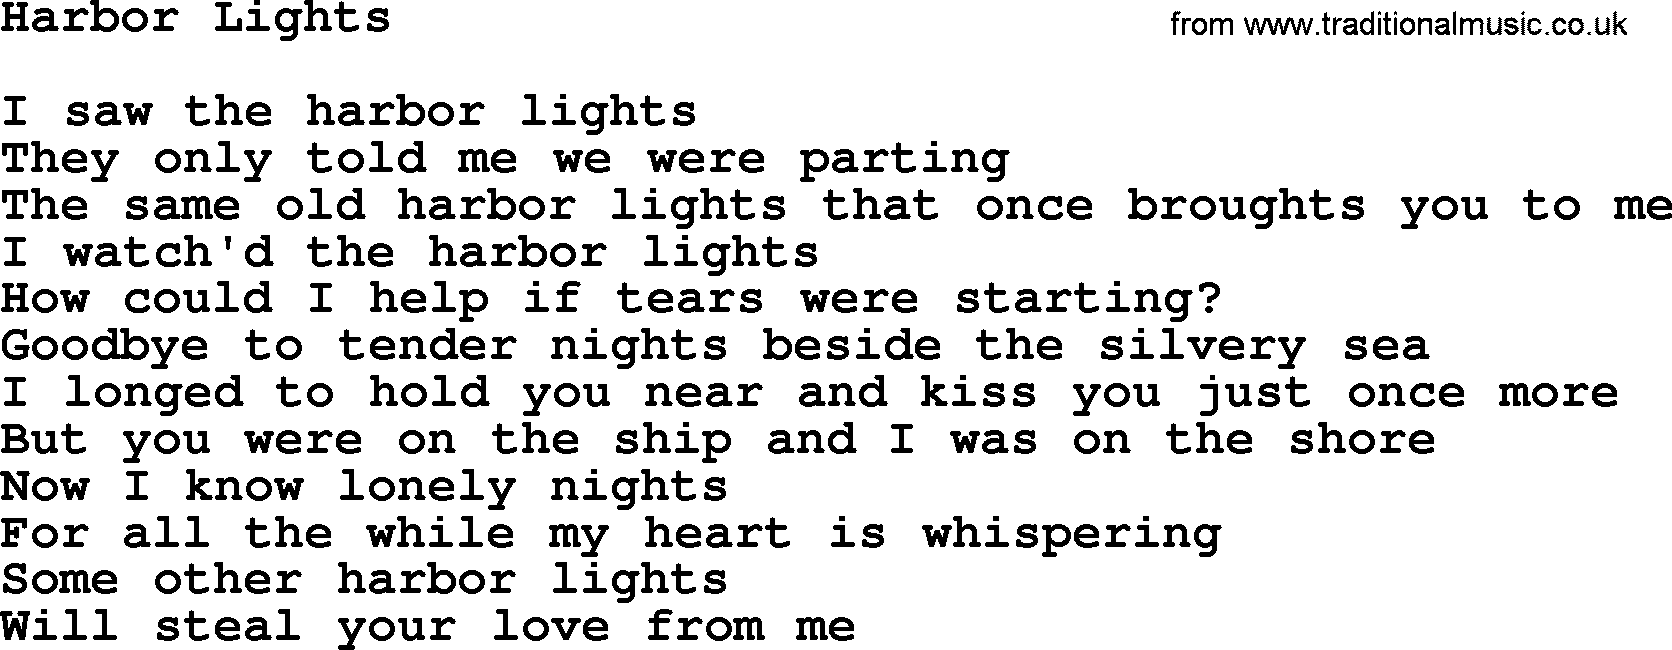 Willie Nelson song: Harbor Lights lyrics